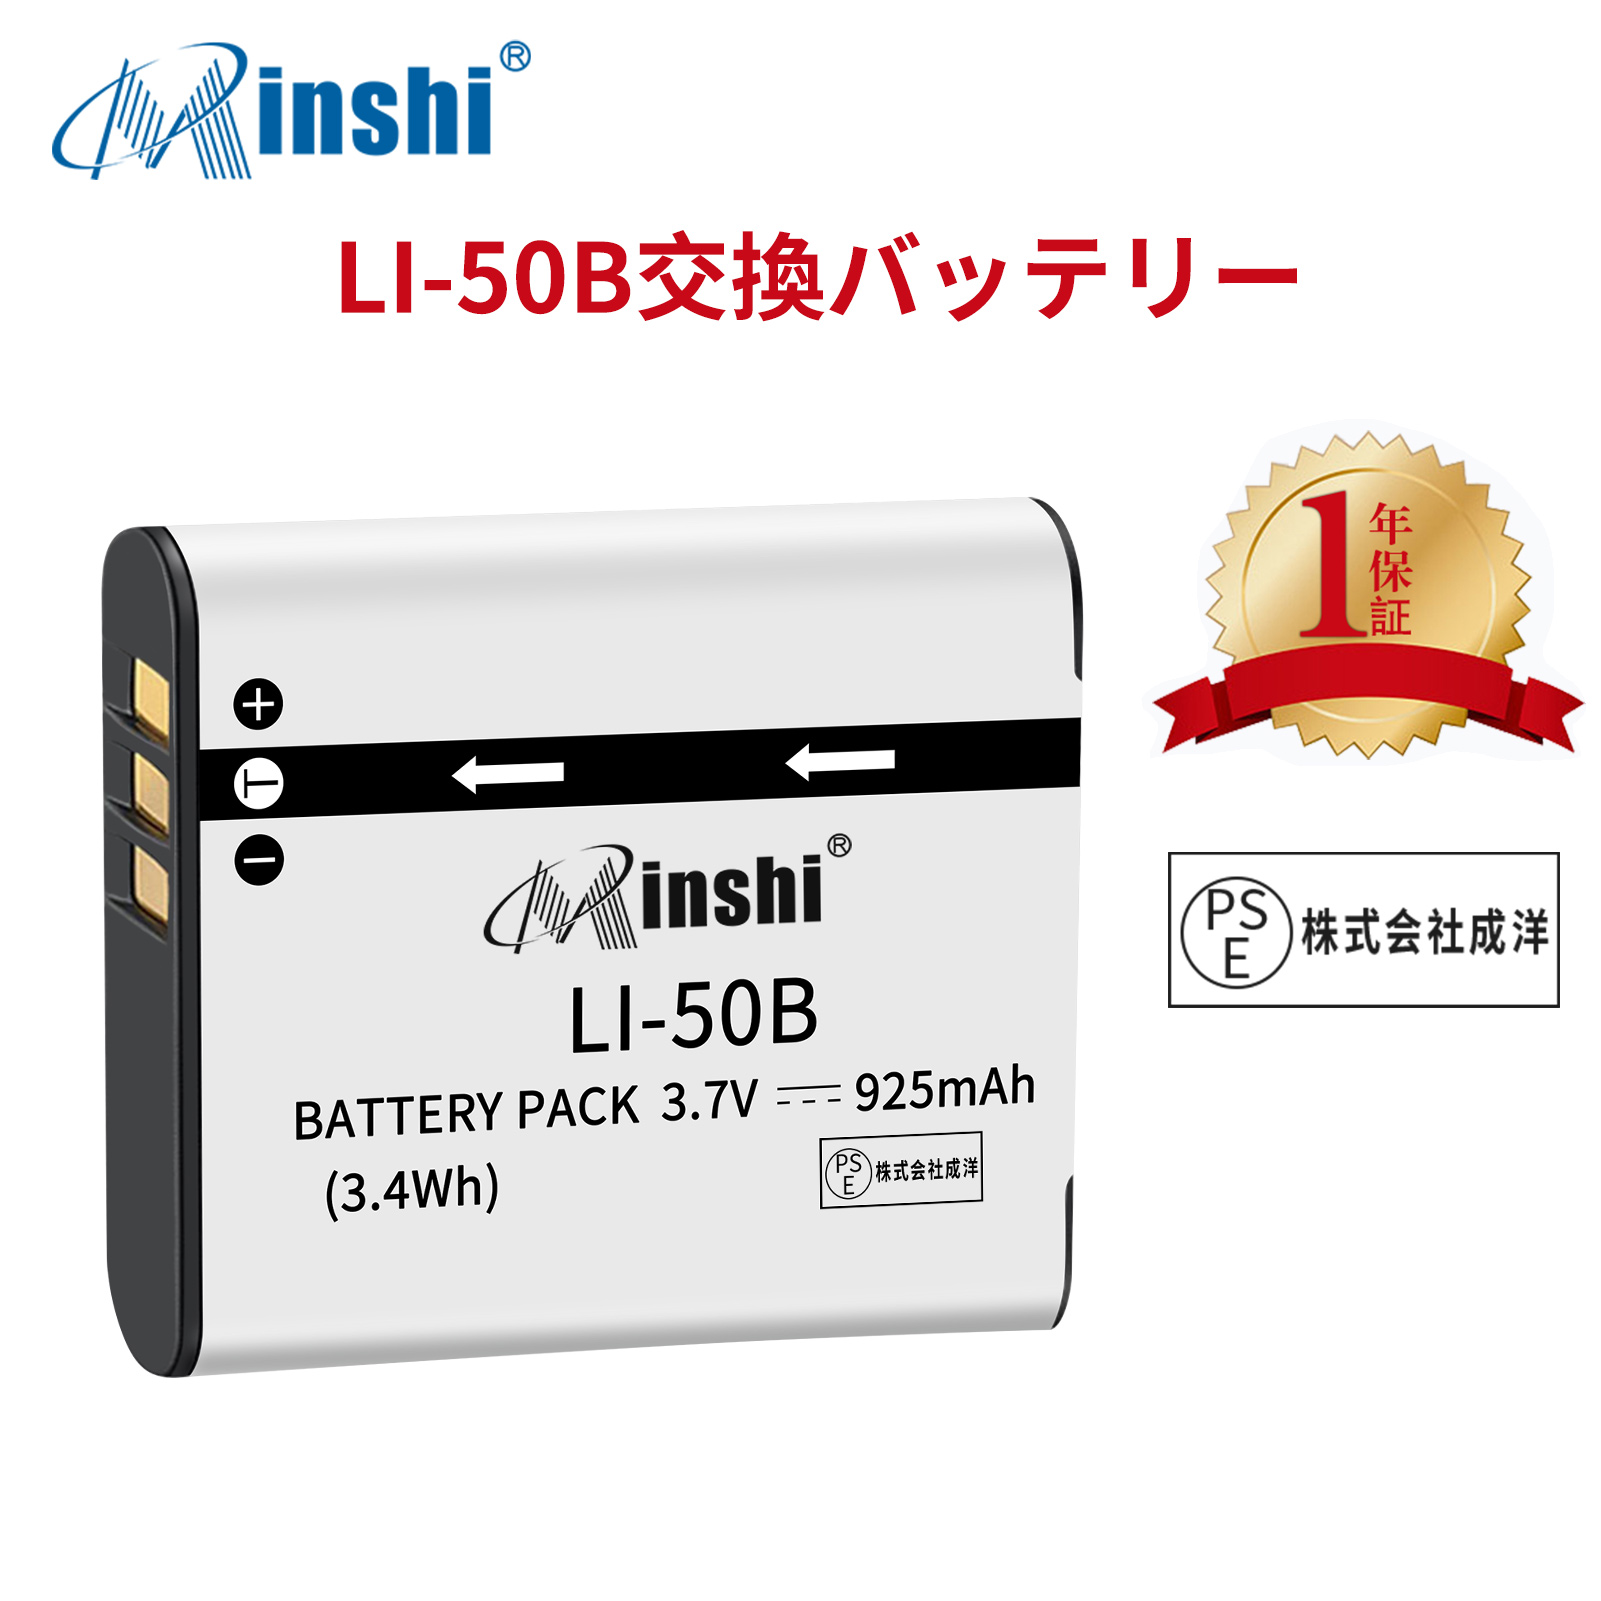 【1年保証】minshi OLYMPUS TG-850 【925mAh 3.7V】PSE認定済 高品質 LI-50B 交換用バッテリー